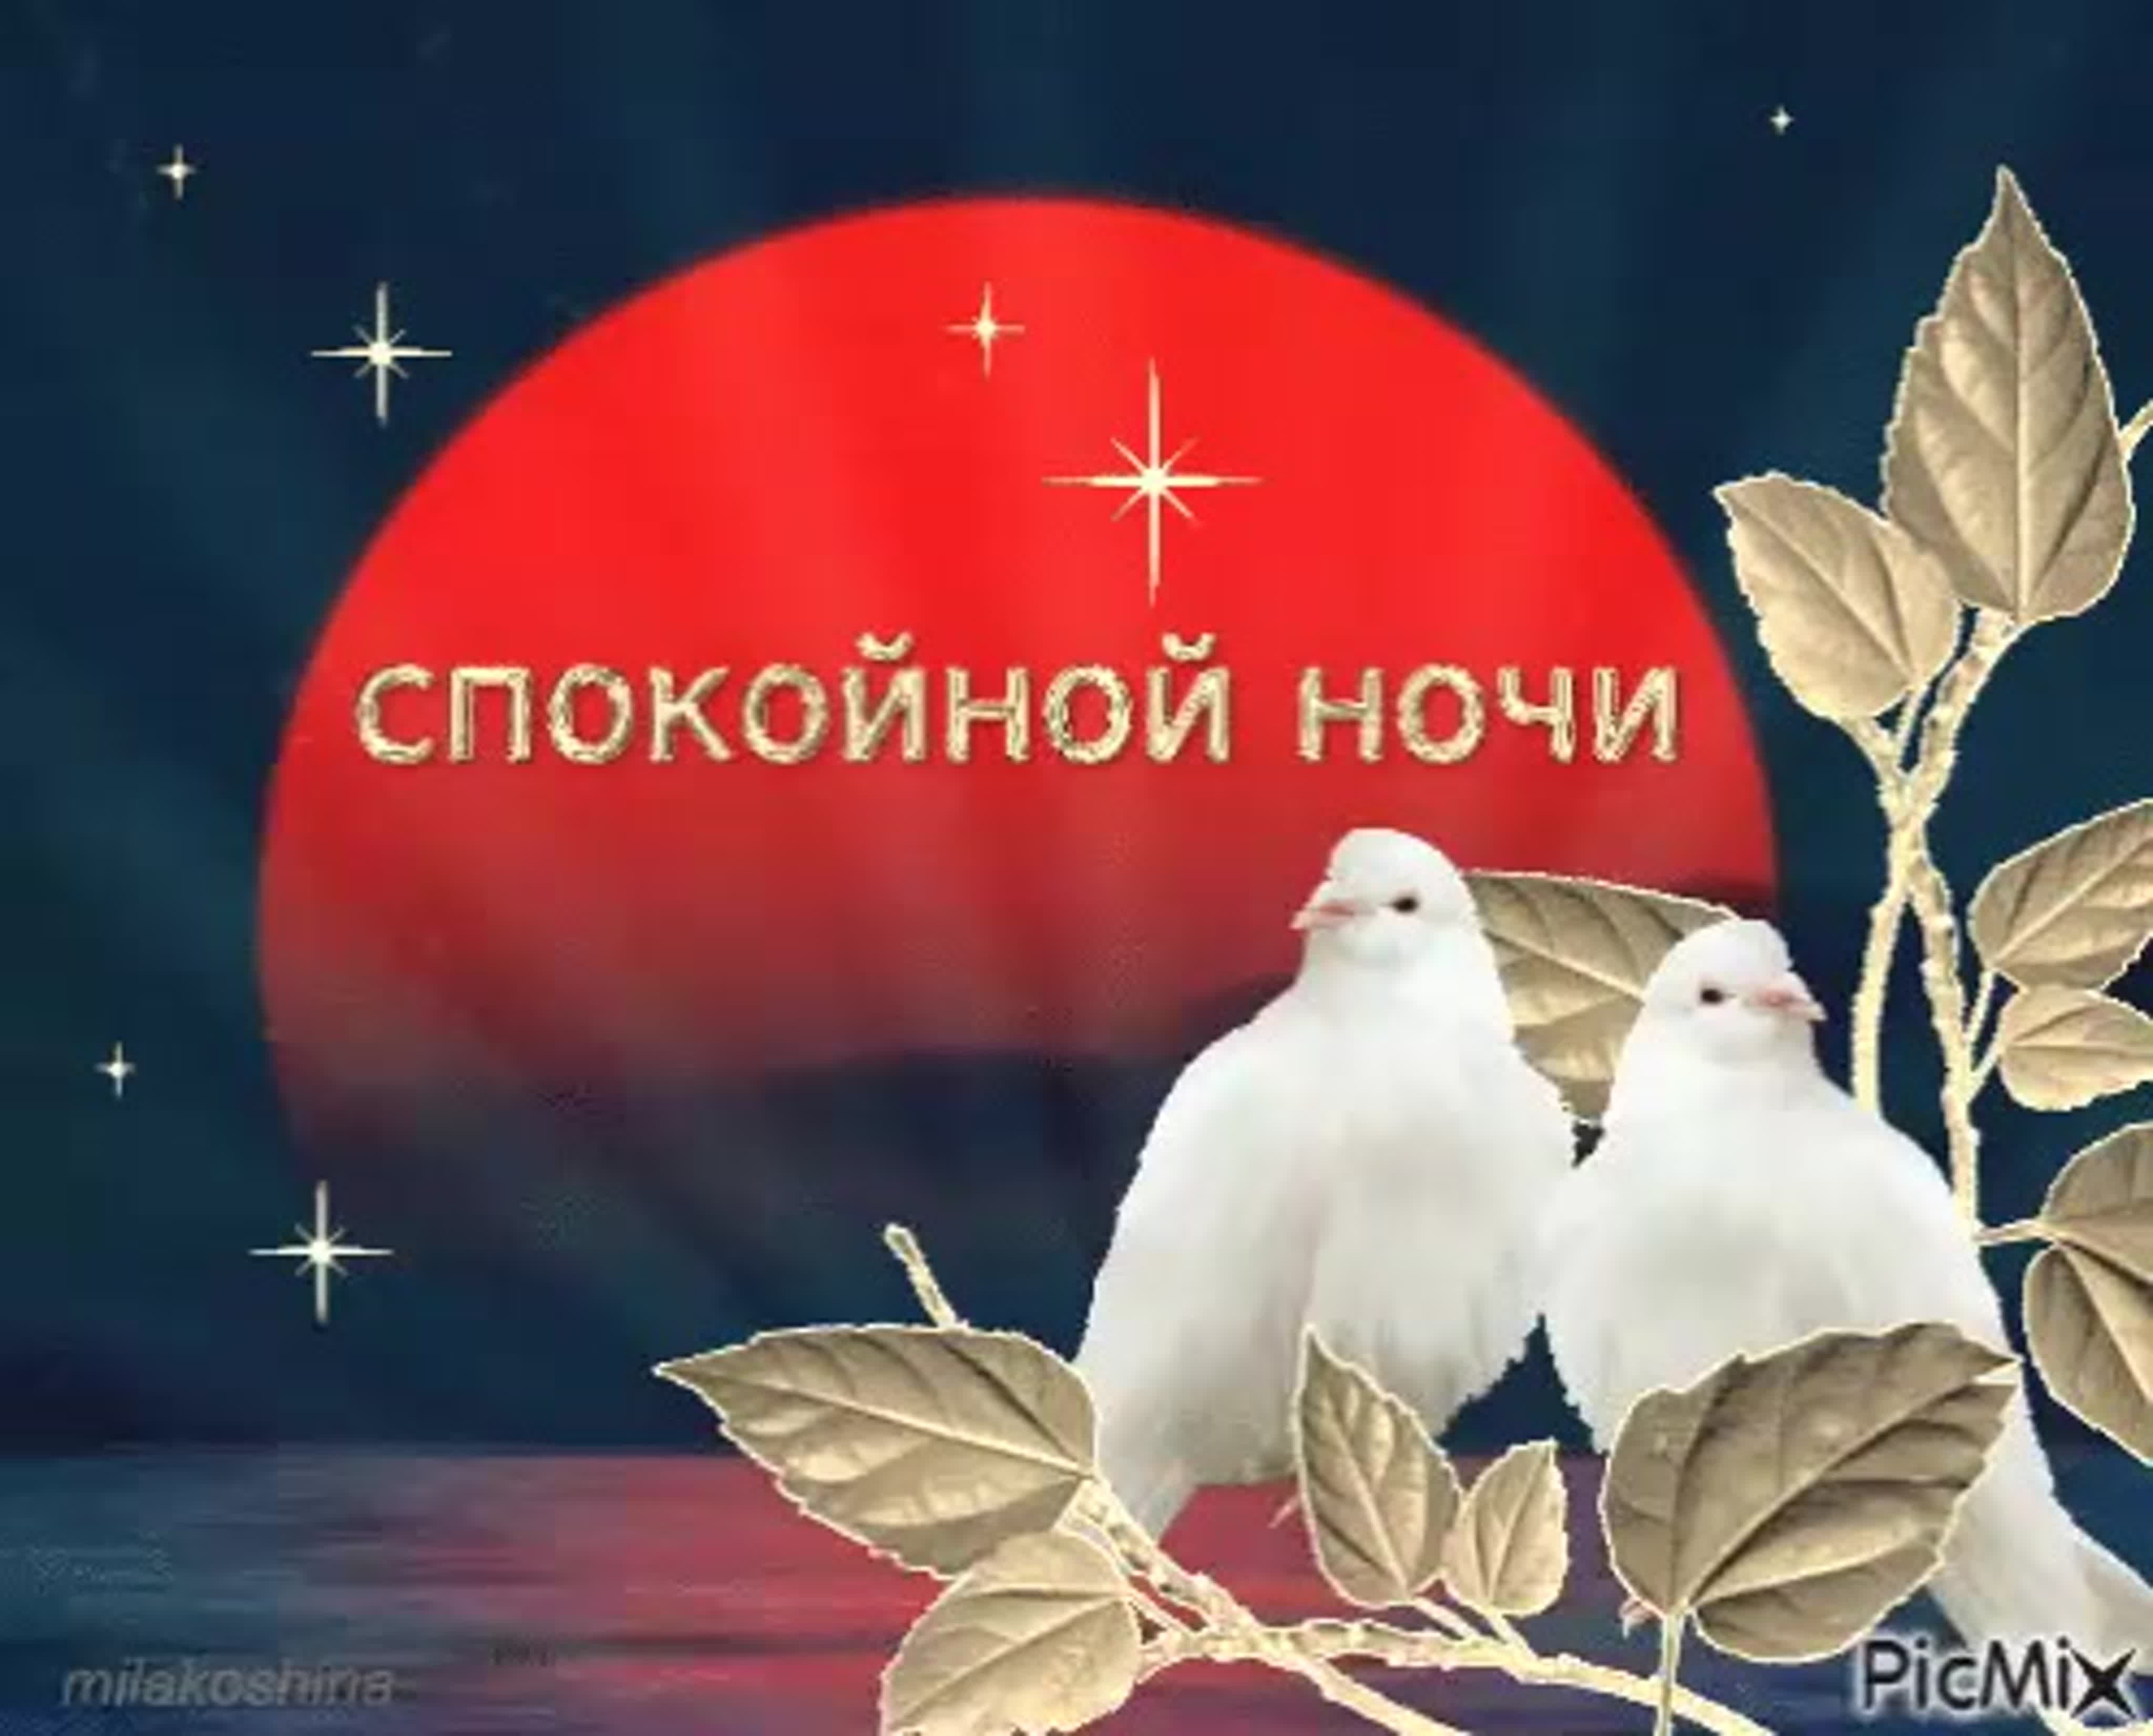 Благословенное пожелание доброй ночи. Доброй ночи христианские. Спокойной ночи голуби. Доброй ночи православные пожелания. Спокойной январской ночи.